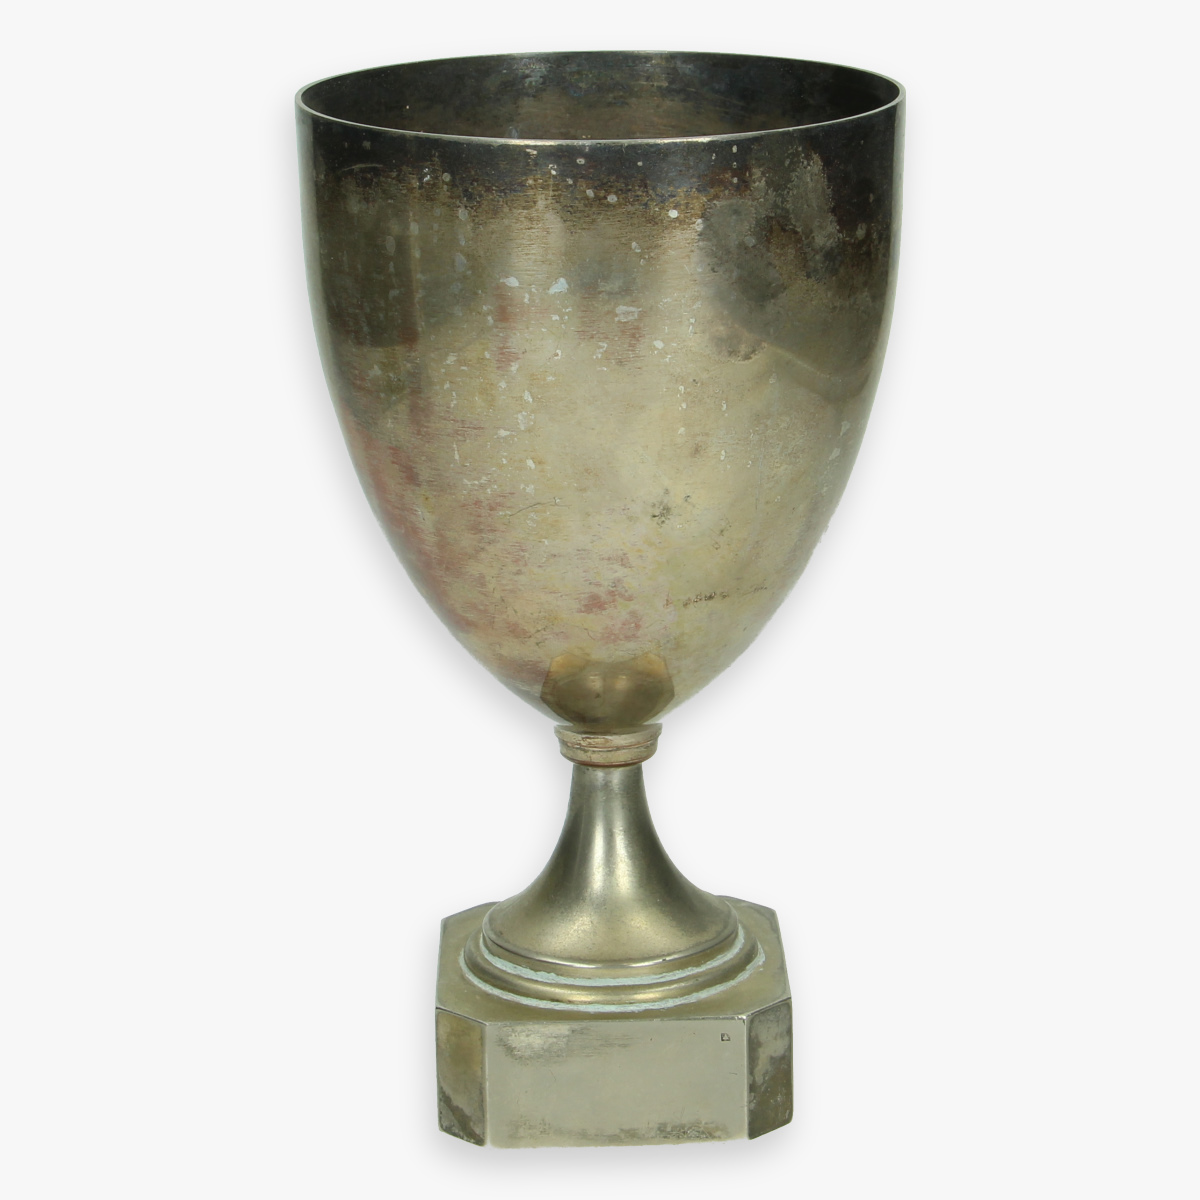 Afbeeldingen van oude sport trofee '' martini '' logo op trofee zeldzaam